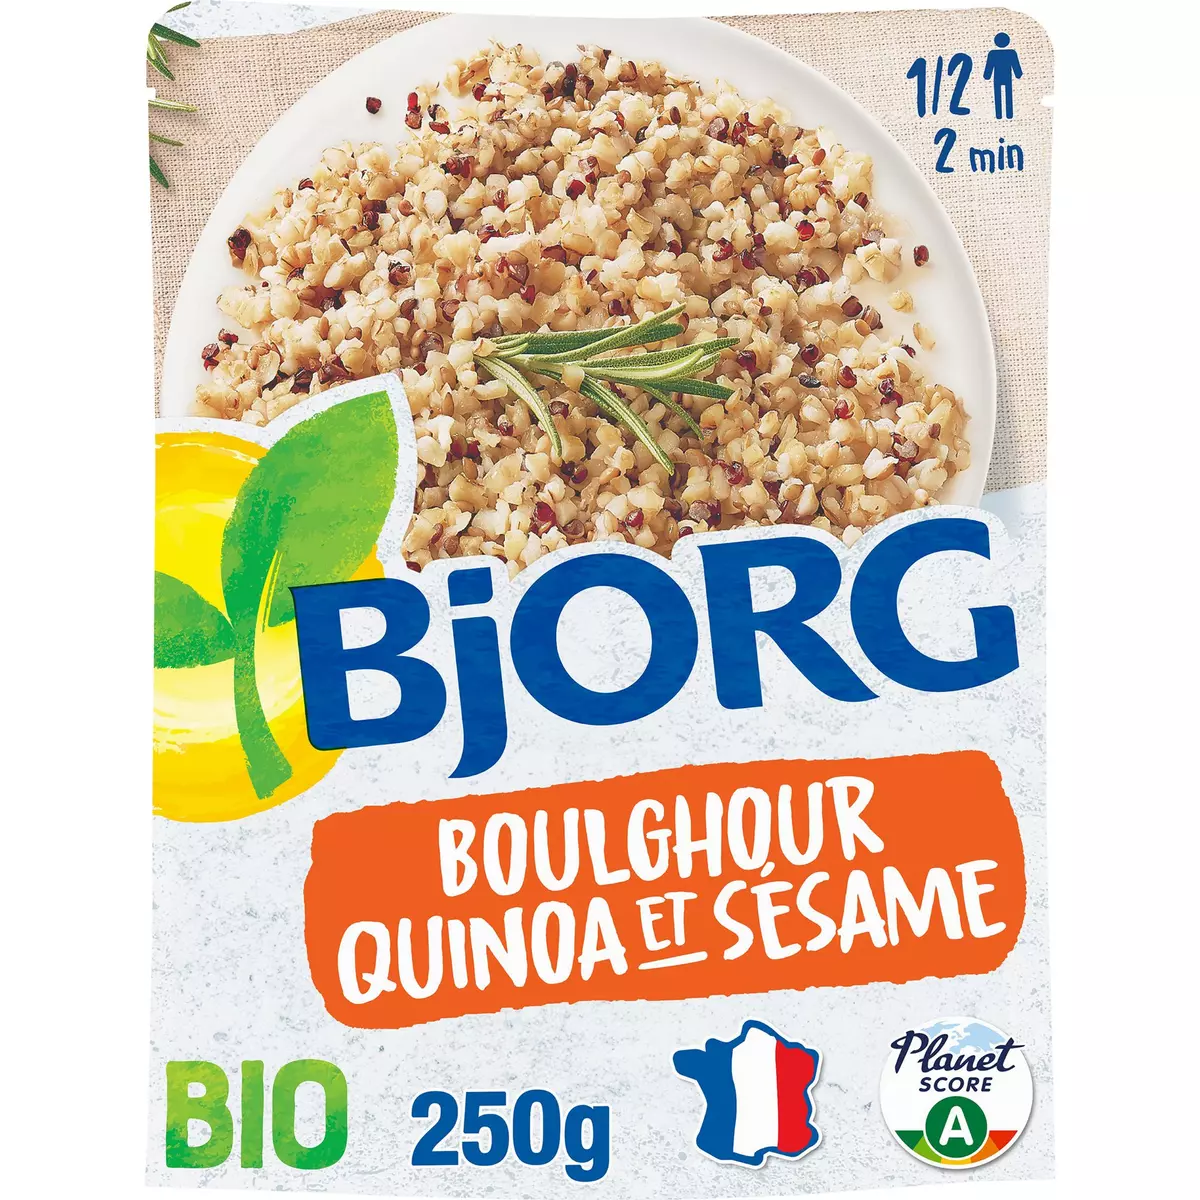 BJORG Boulgour quinoa sésame bio veggie sachet express 1-2 personnes 250g